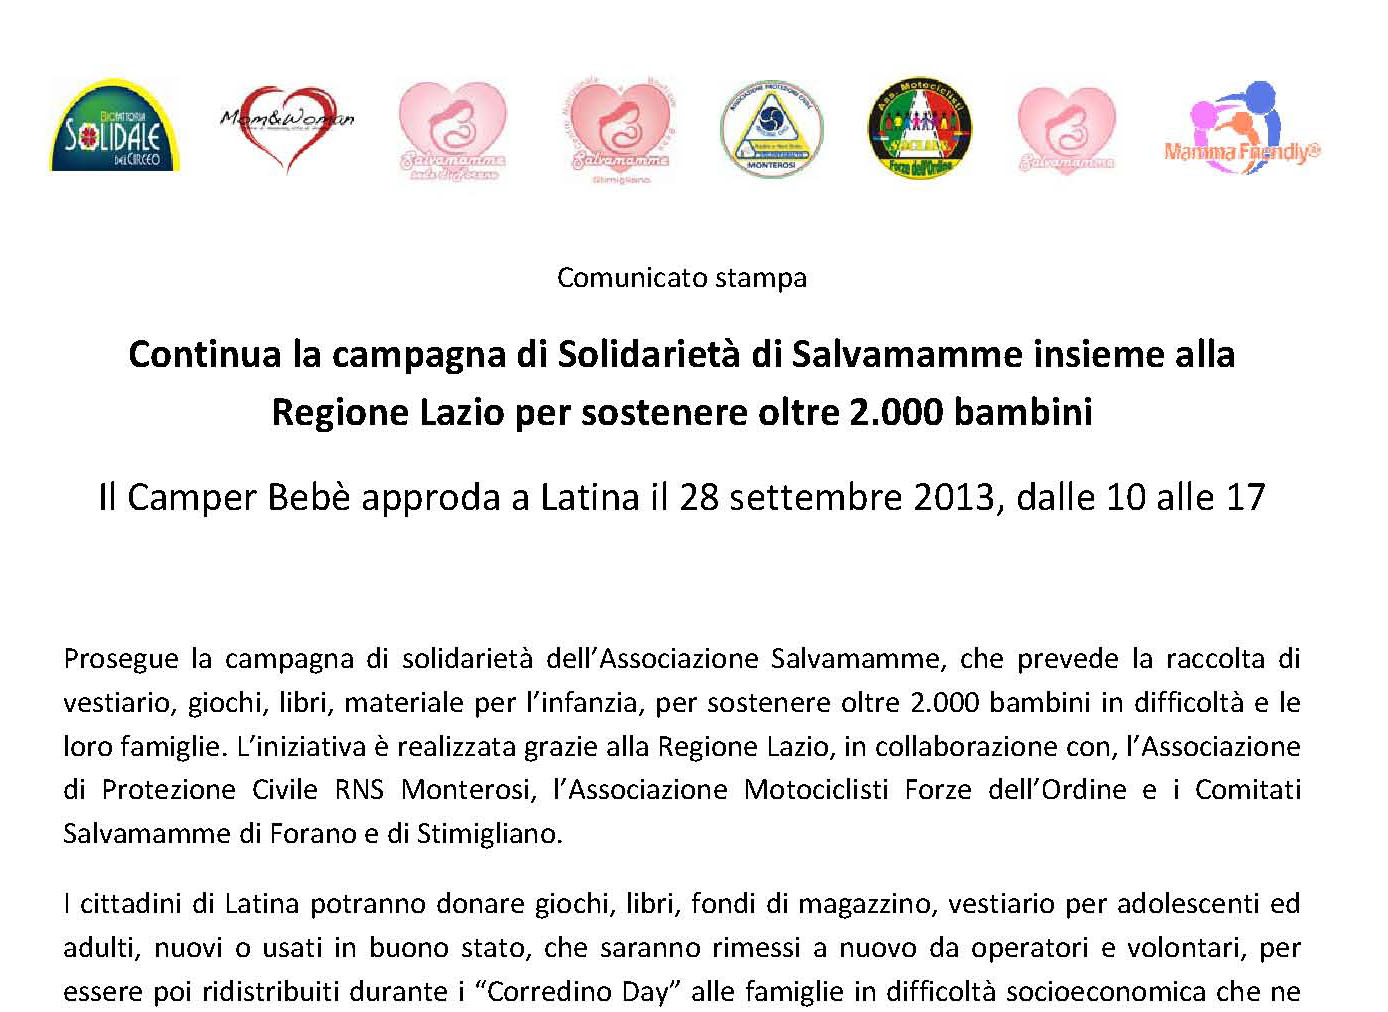 Campagna di solidarietà: il camper Bebè approda a Latina